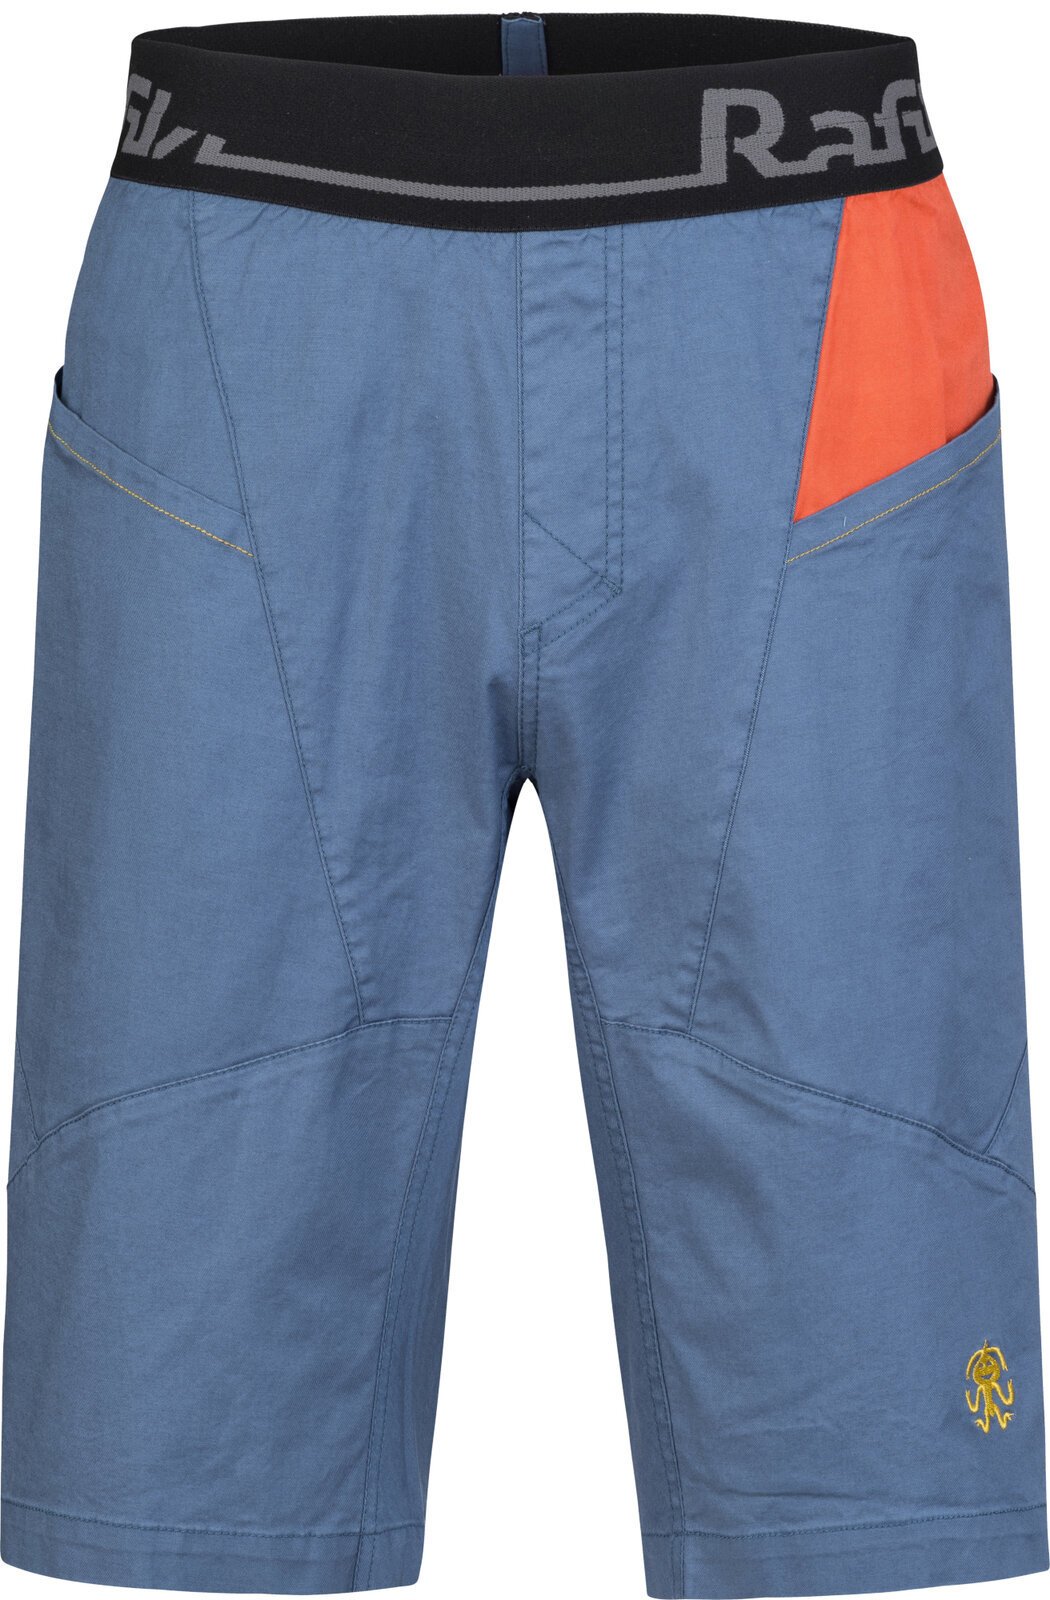 Outdoorové šortky Rafiki Megos Man Shorts Ensign Blue/Clay XS Outdoorové šortky